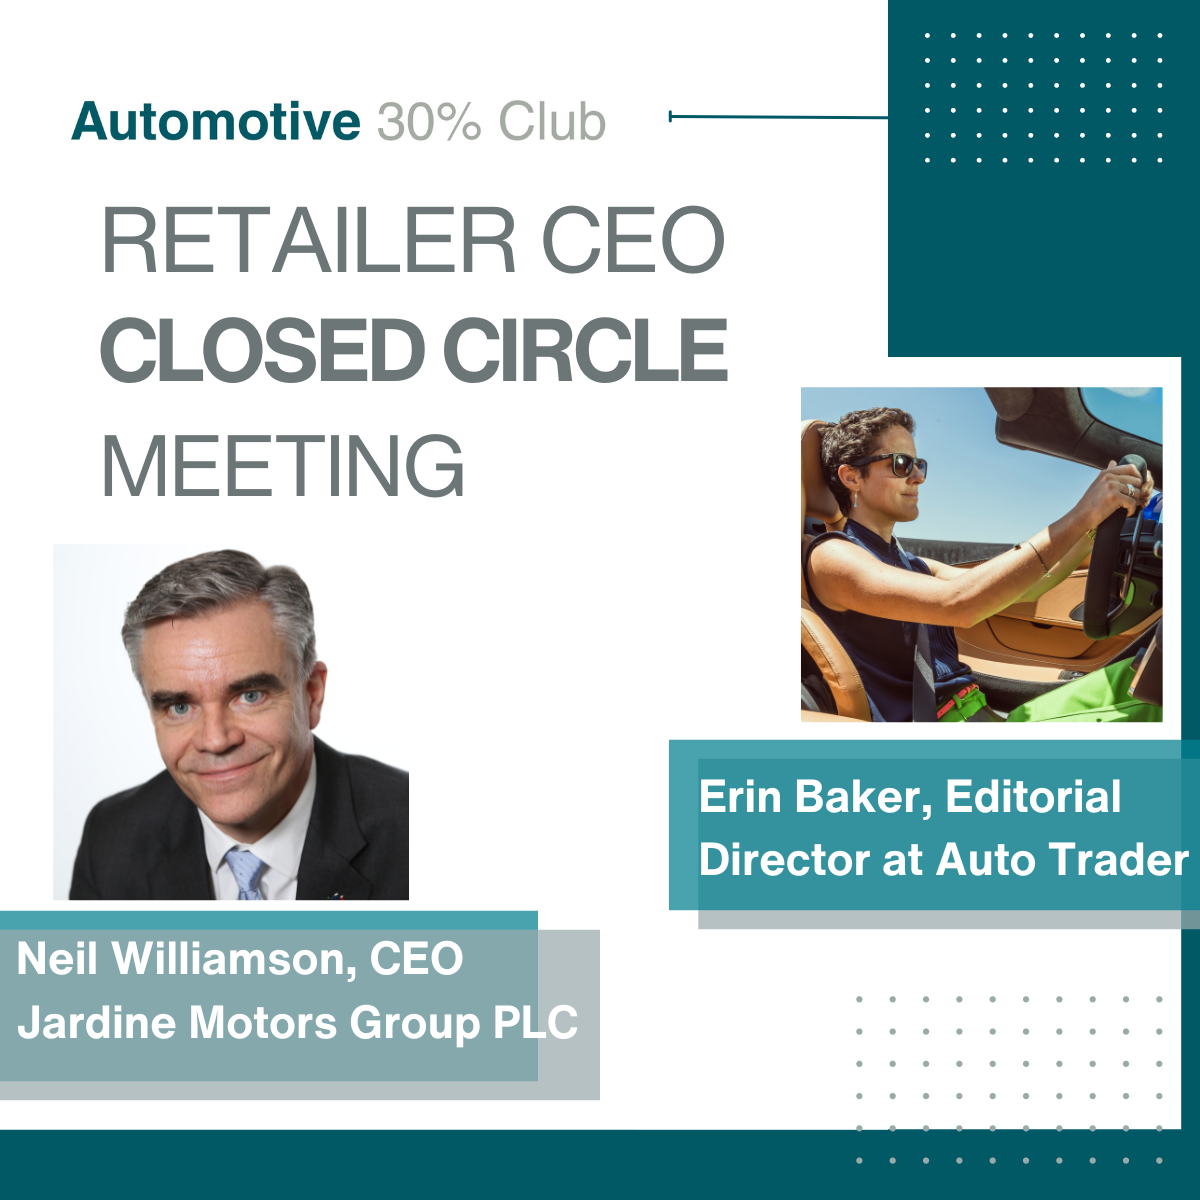 Retailer CEO Meetings